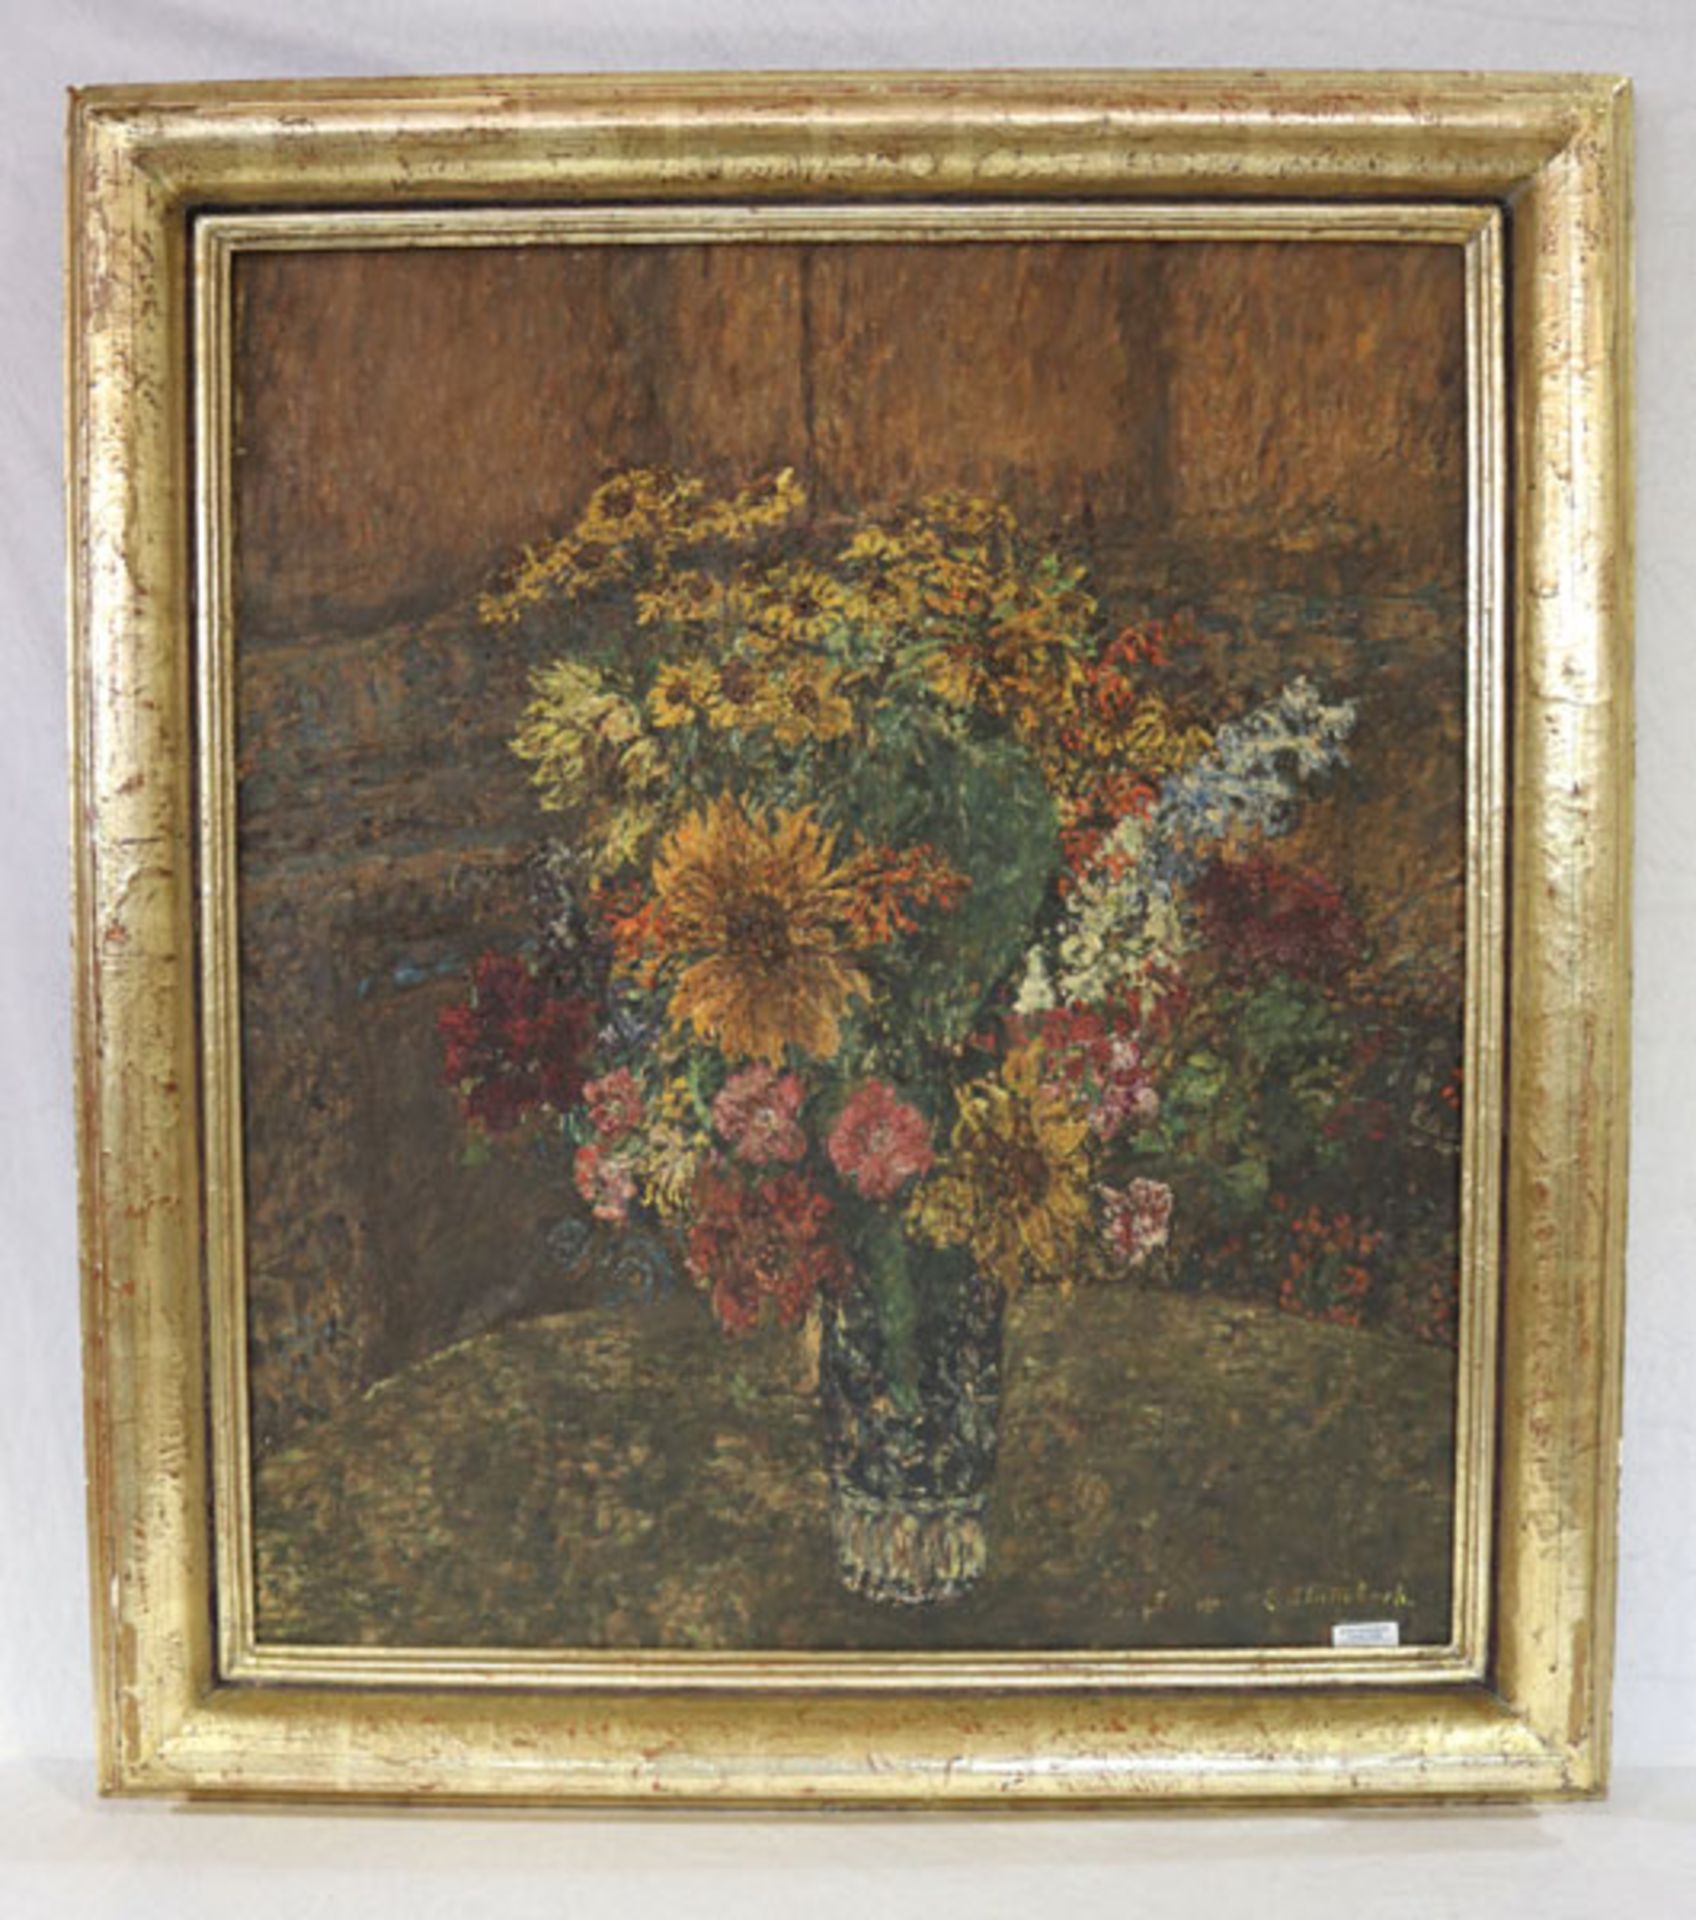 Gemälde ÖL/LW 'Blumenstillleben in Vase', undeutlich signiert, gerahmt, Rahmen bestossen, incl.